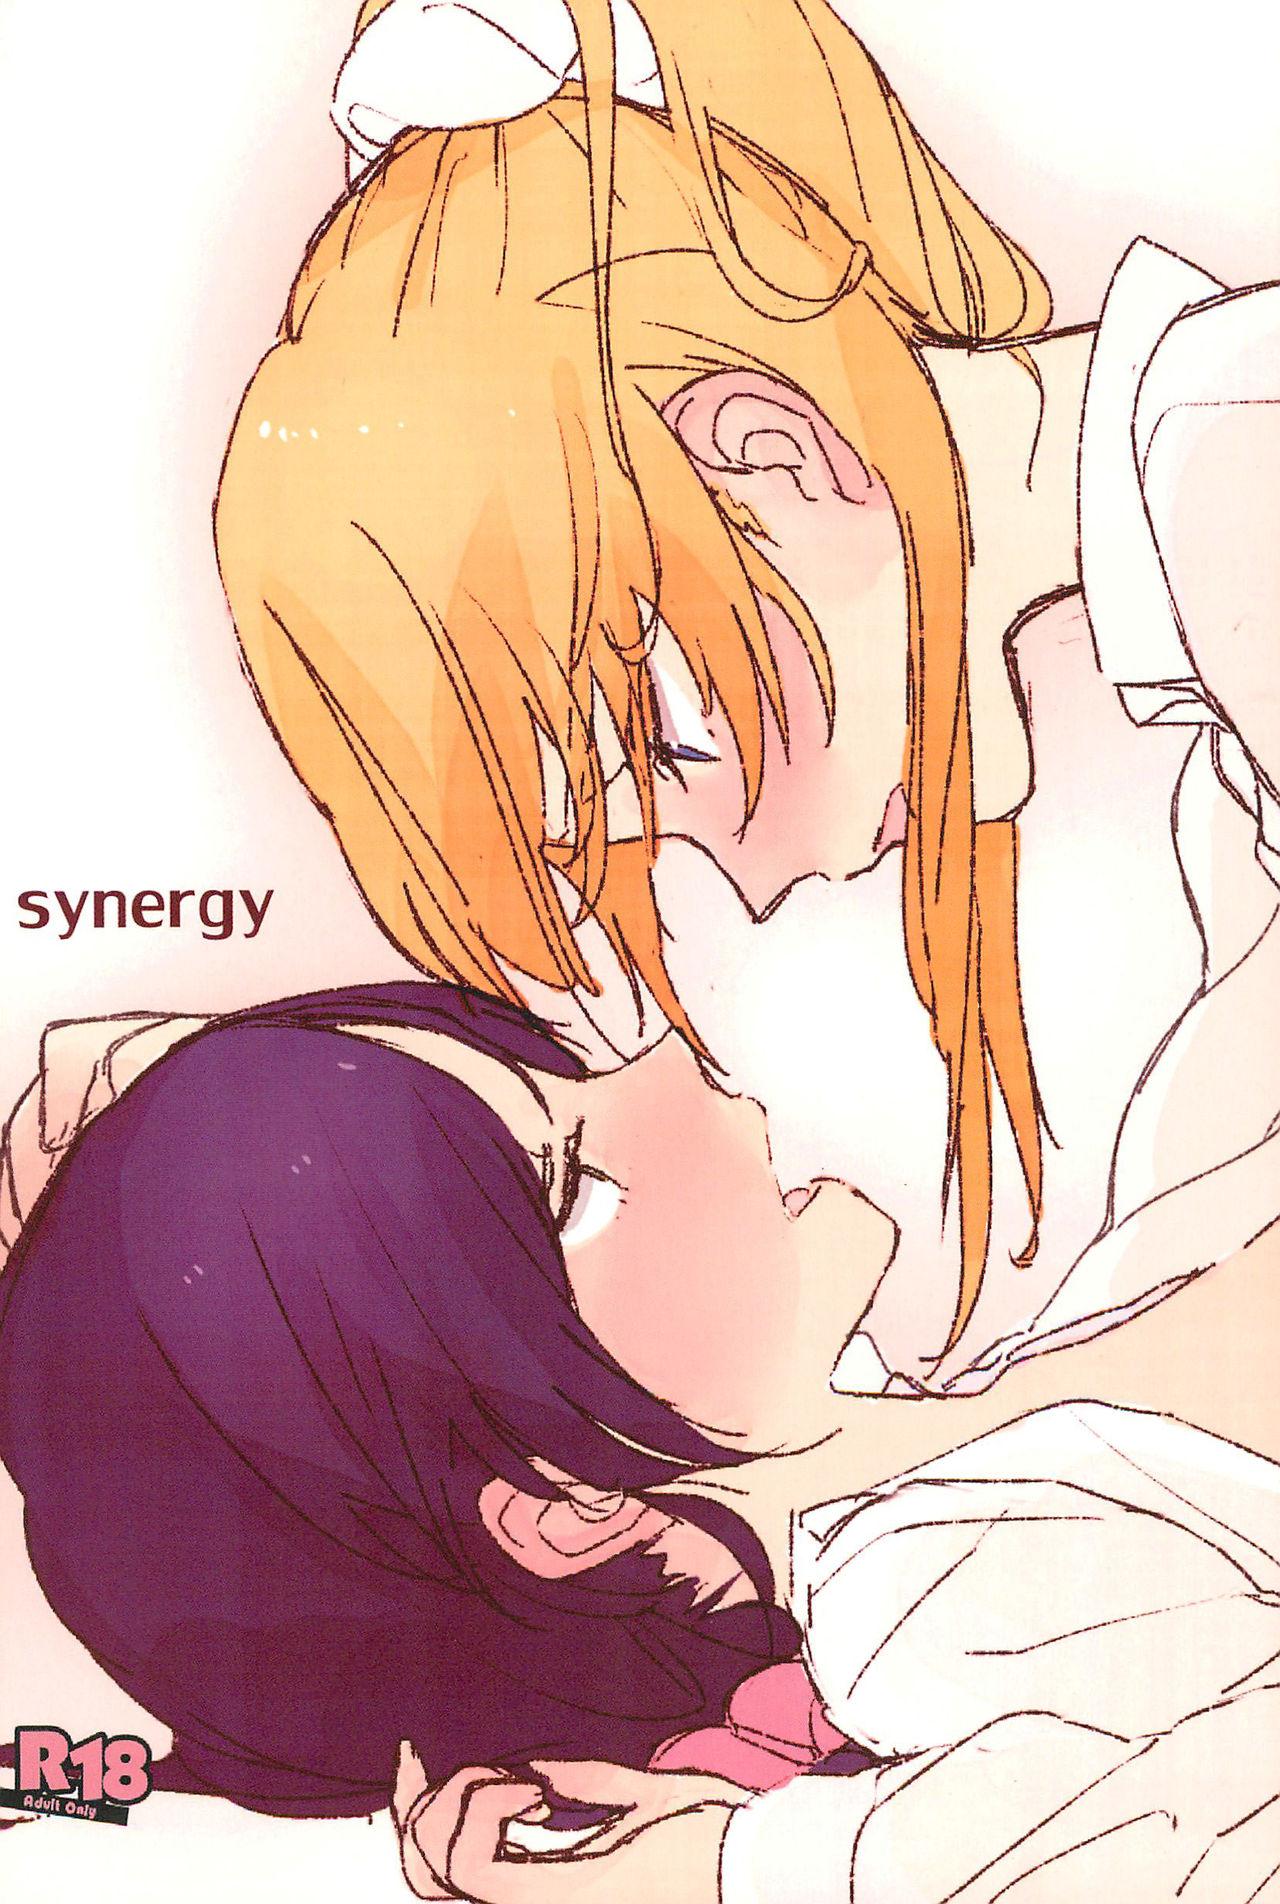 synergy 0